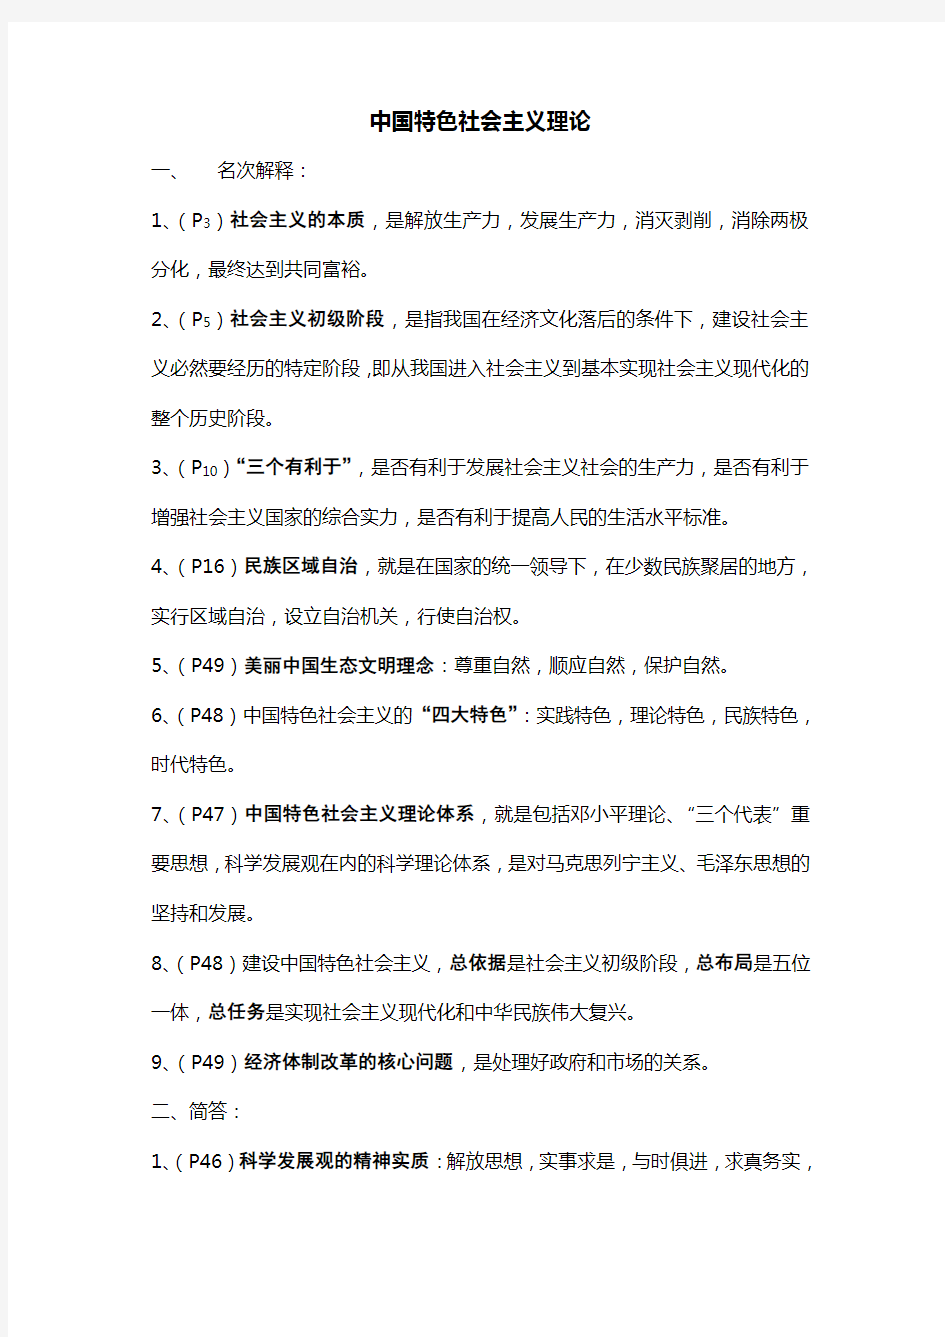 中国特色社会主义理论(安徽省委党校研究生考试范围)